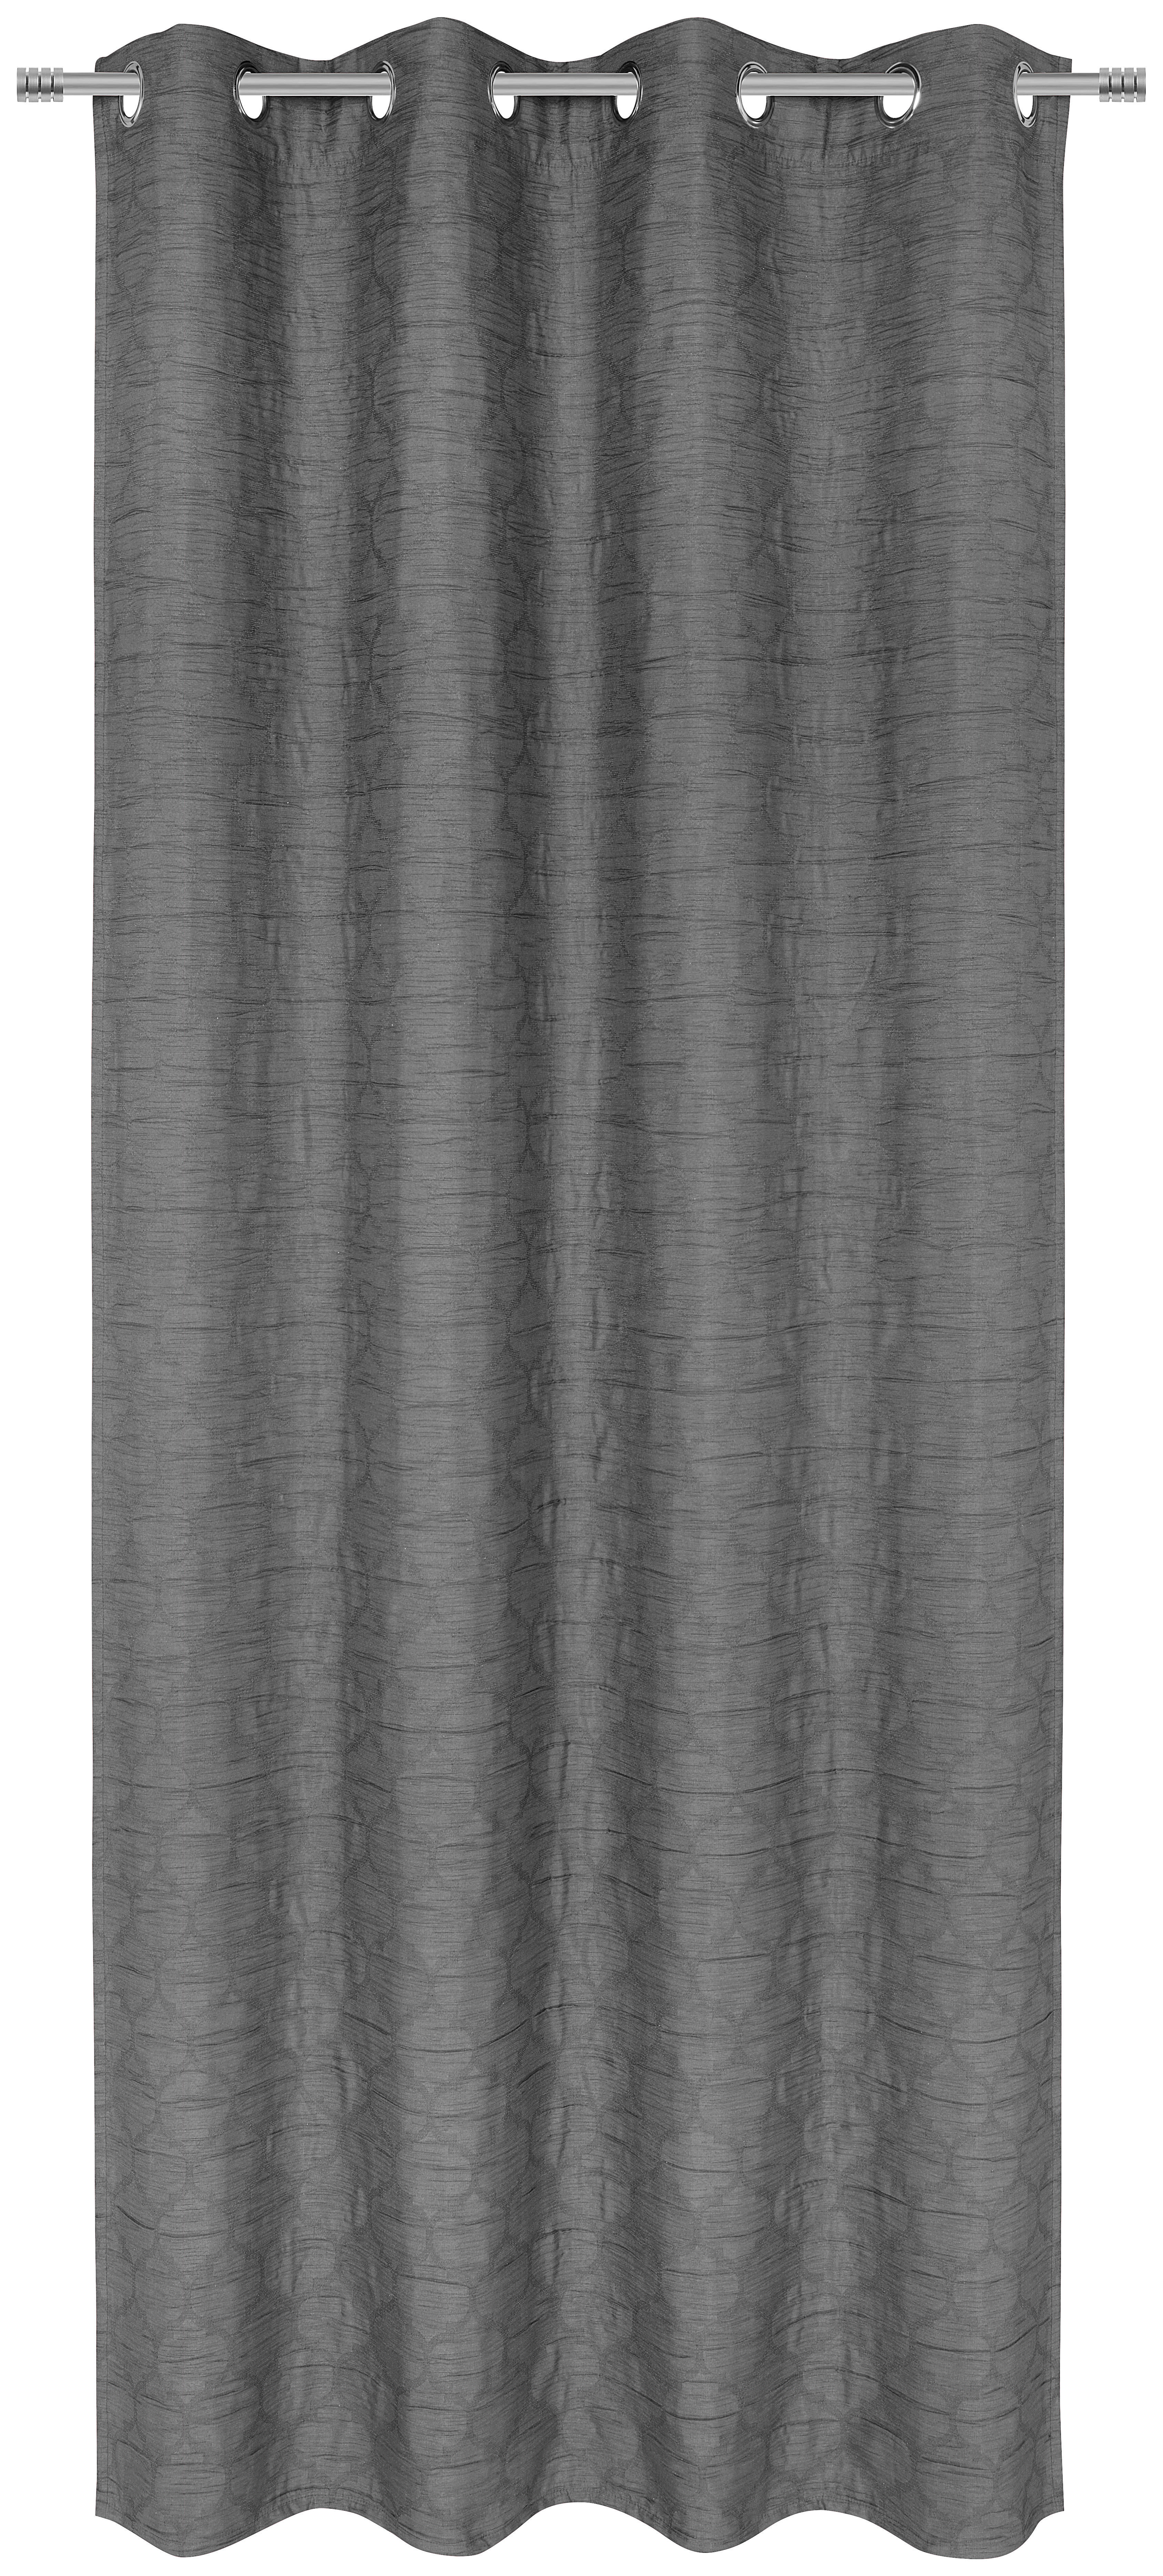 ÖSENSCHAL black-out (lichtundurchlässig) 135/245 cm   - Anthrazit, Basics, Textil (135/245cm) - Esposa